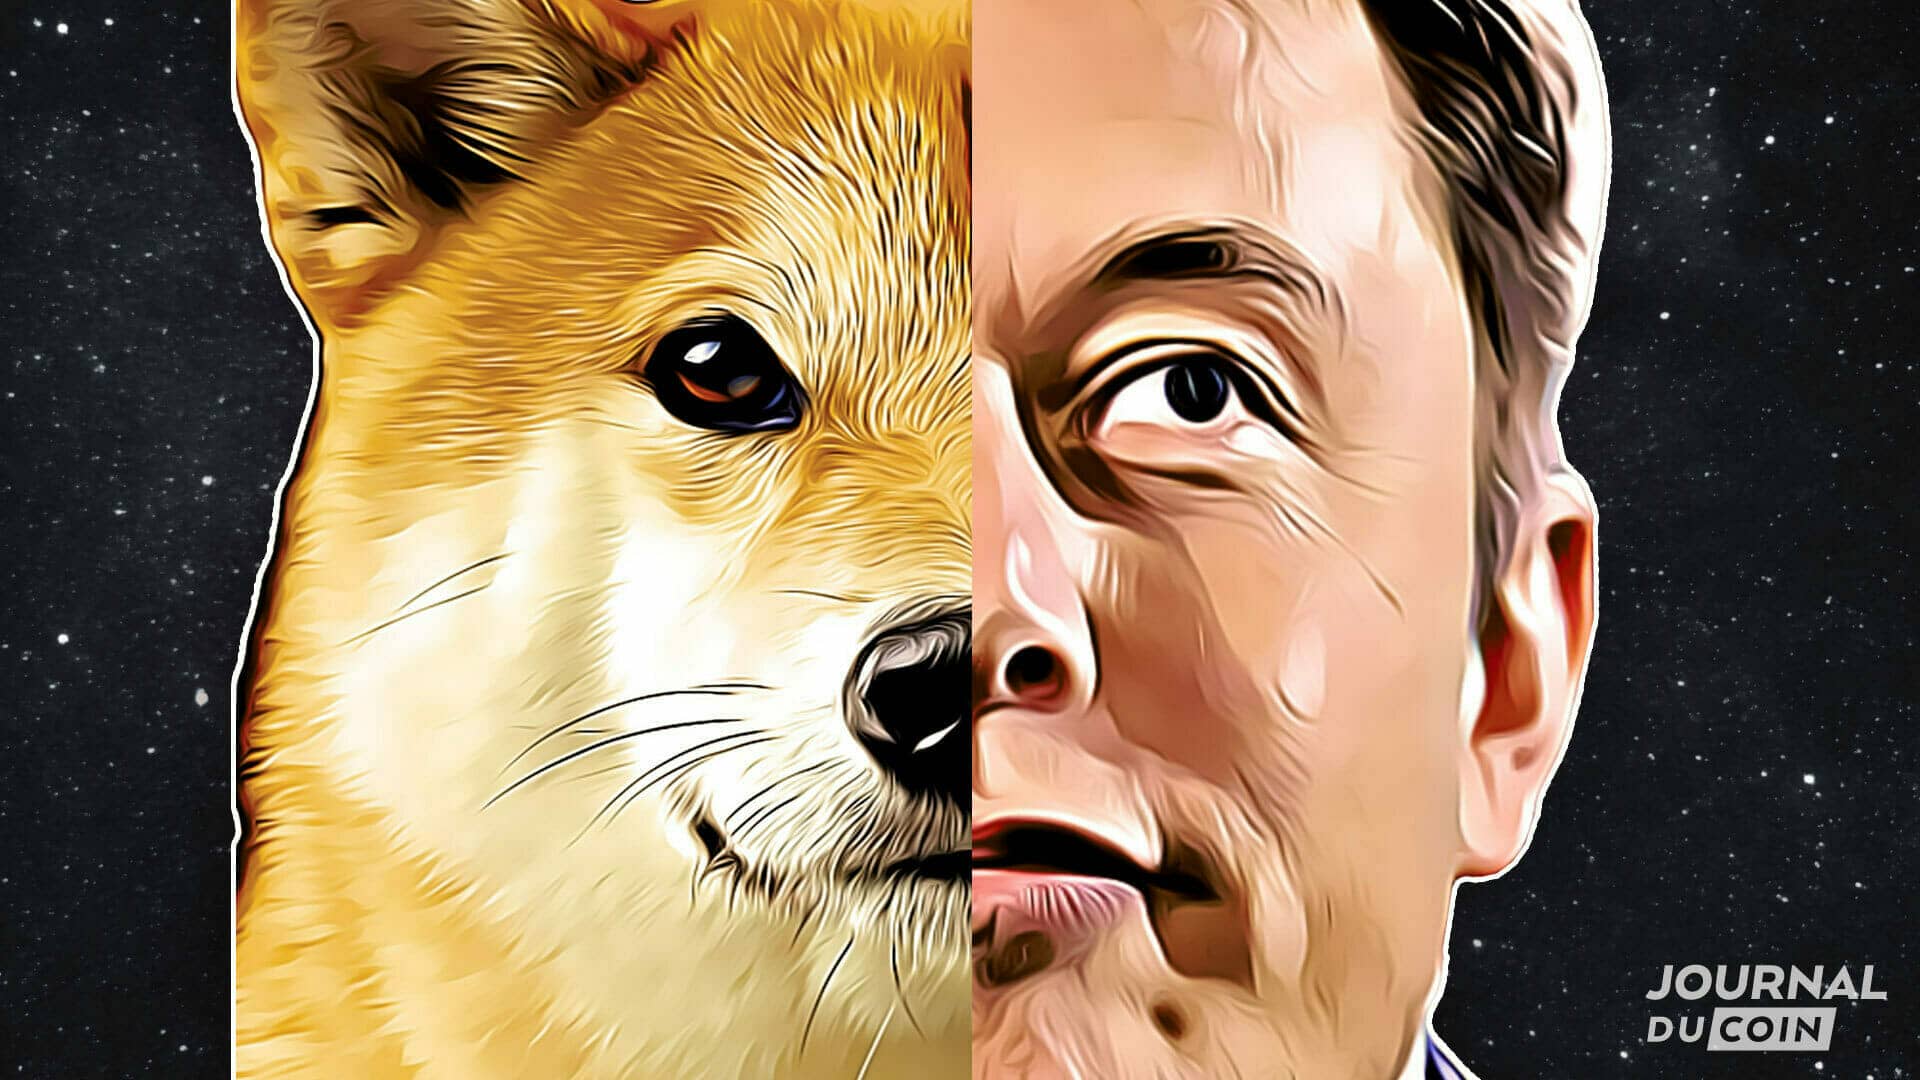 تم دفع تشفير DOGE في عام 2021 بواسطة مسك Elon غريب الأطوار ، وقد ينتهي به الأمر في العثور على فائدته.